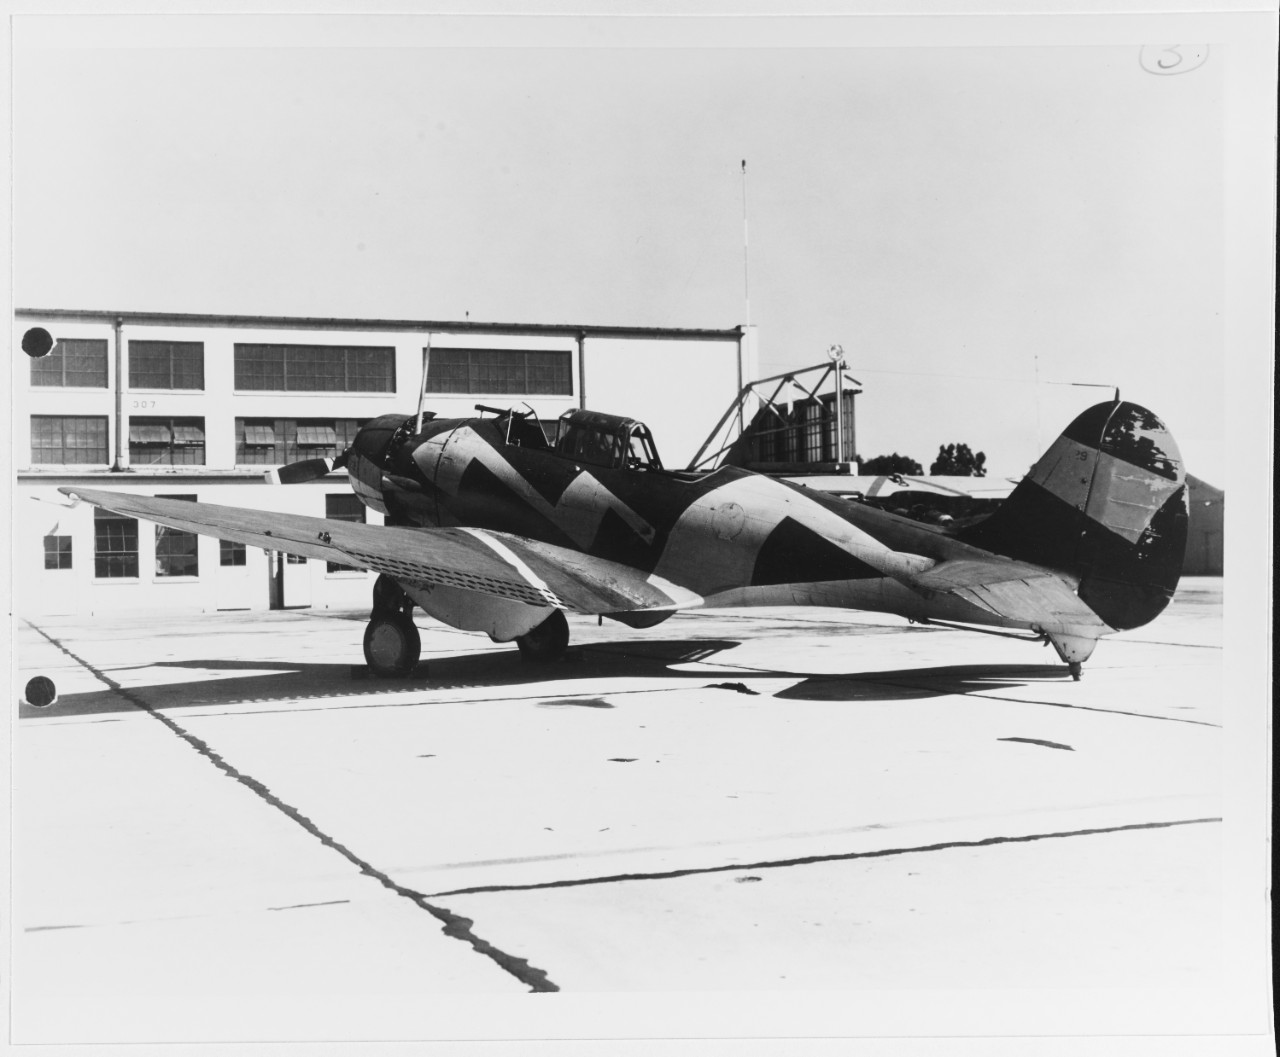 Northrop BT-1